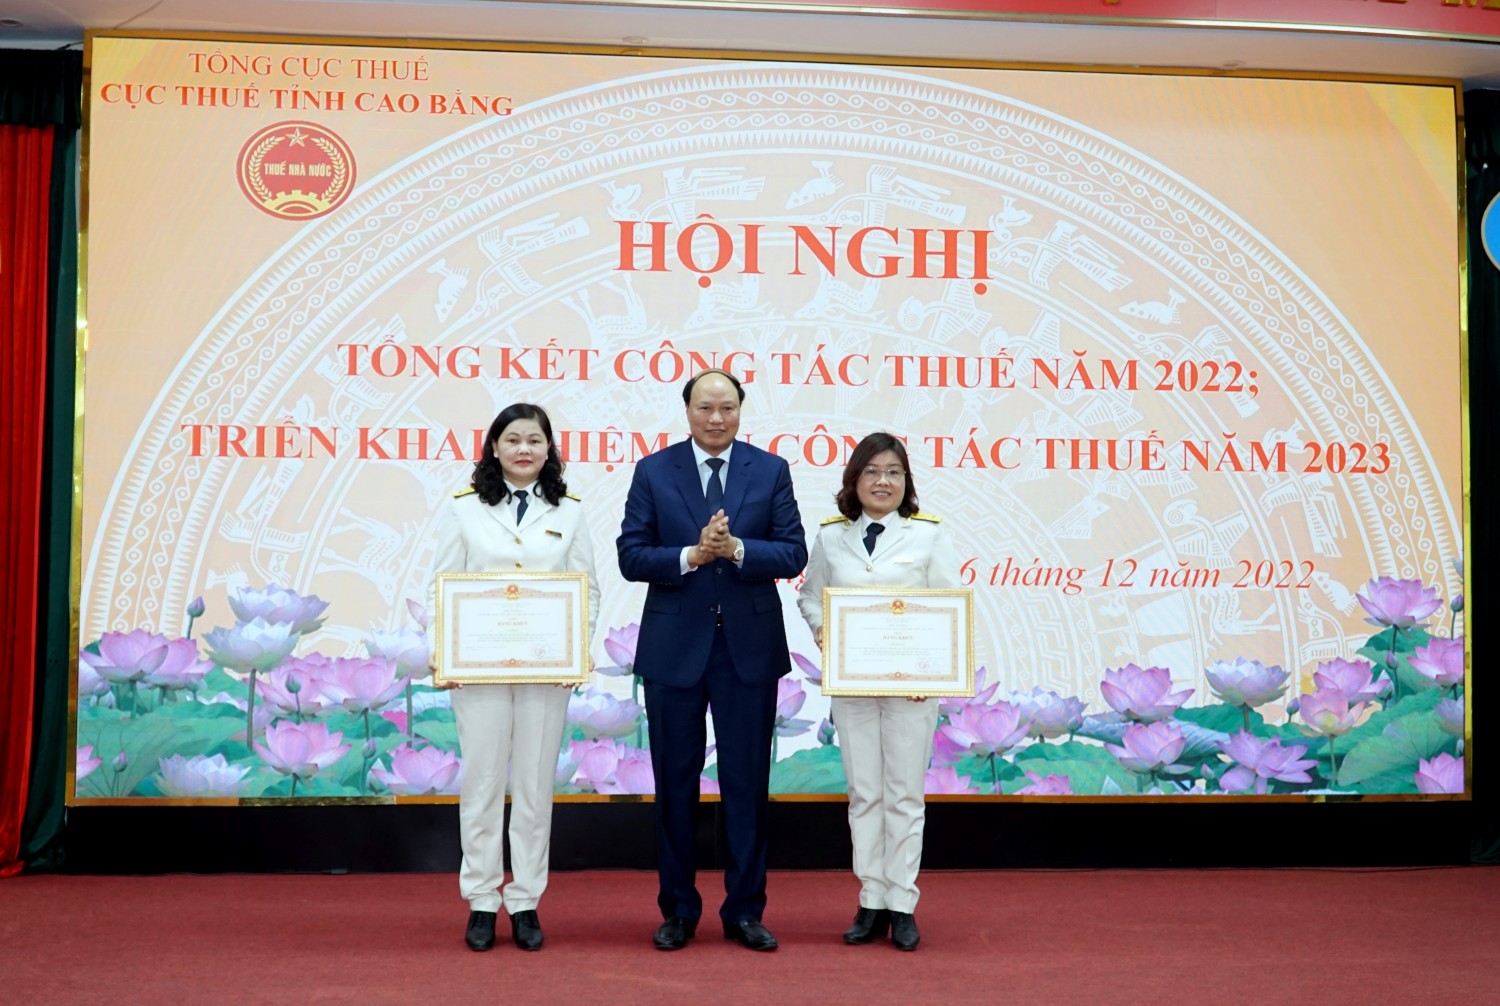 Thừa ủy quyền Thủ tướng Chính phủ, Phó Chủ tịch HĐND tỉnh Hoàng Văn Thạch trao Bằng khen cho 2 cá nhân có nhiều thành tích trong công tác thuế giai đoạn 2017 - 2021.